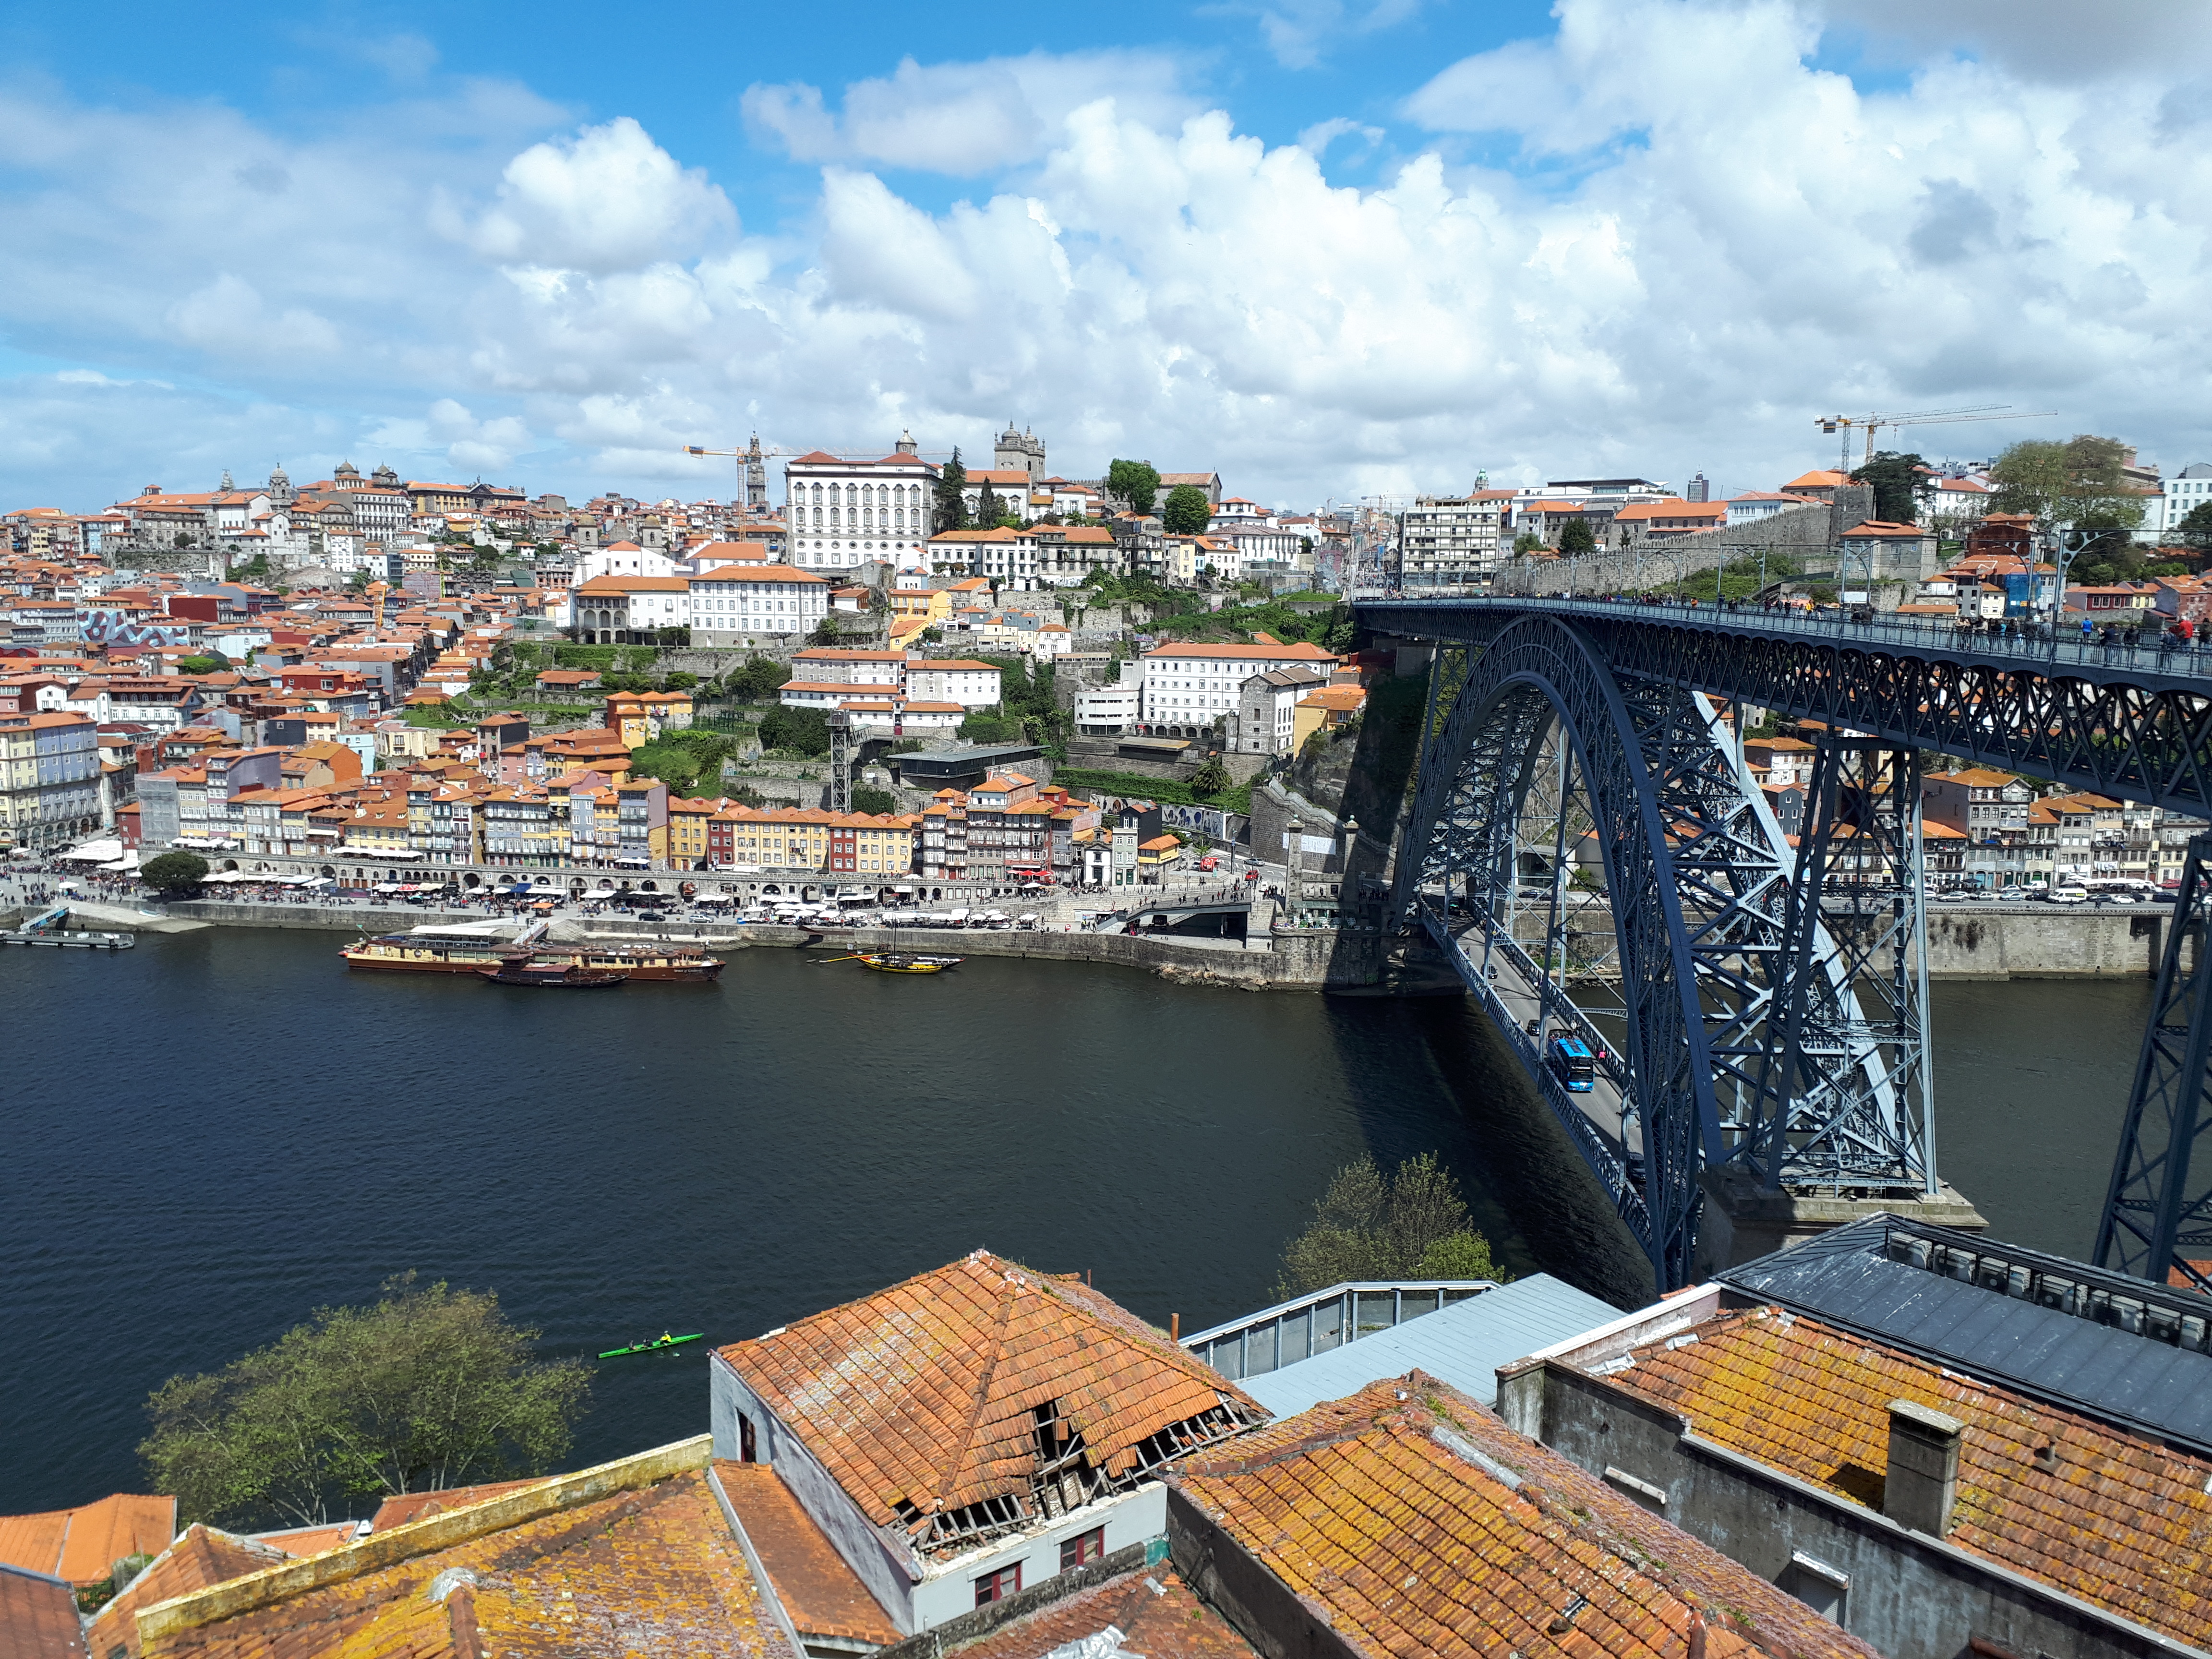 Precioso puente de acero que atraviesa el río Duero con la ciudad de Oporto de fondo y sus tejados anaranjados.